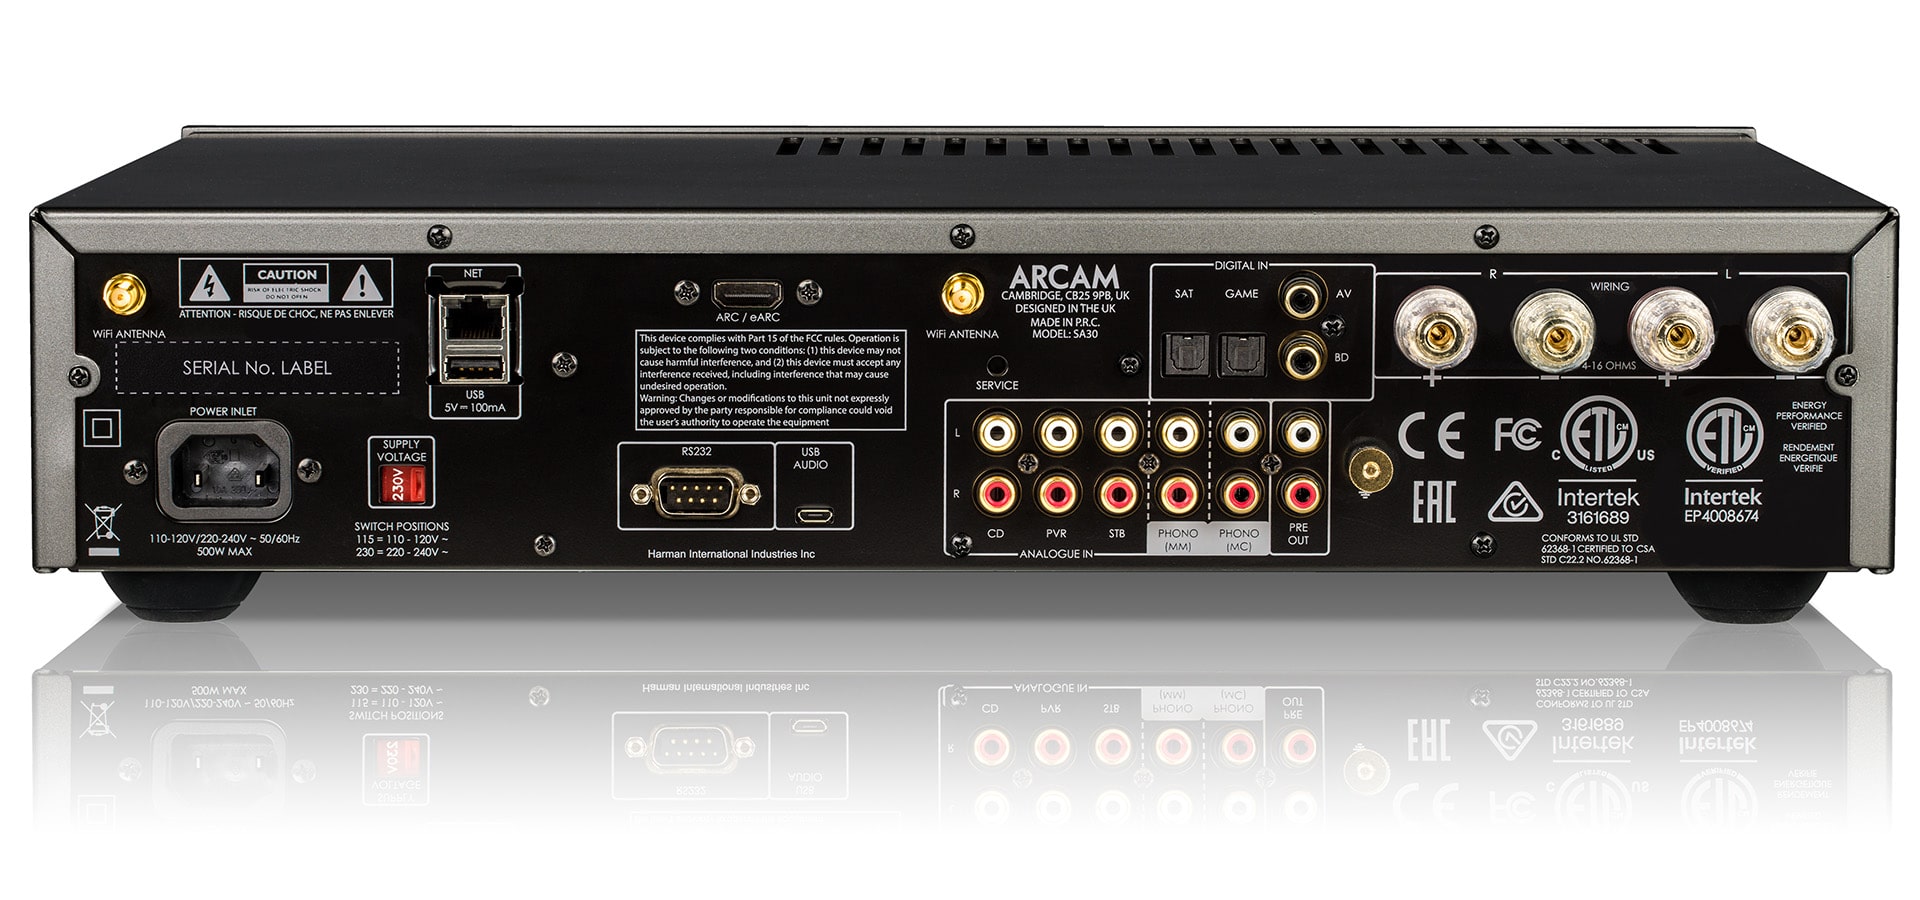 Đón chờ dàn Ampli tích hợp ARCAM SA30 – xứng danh thương hiệu HARMAN trình diễn tại AV Show 2020